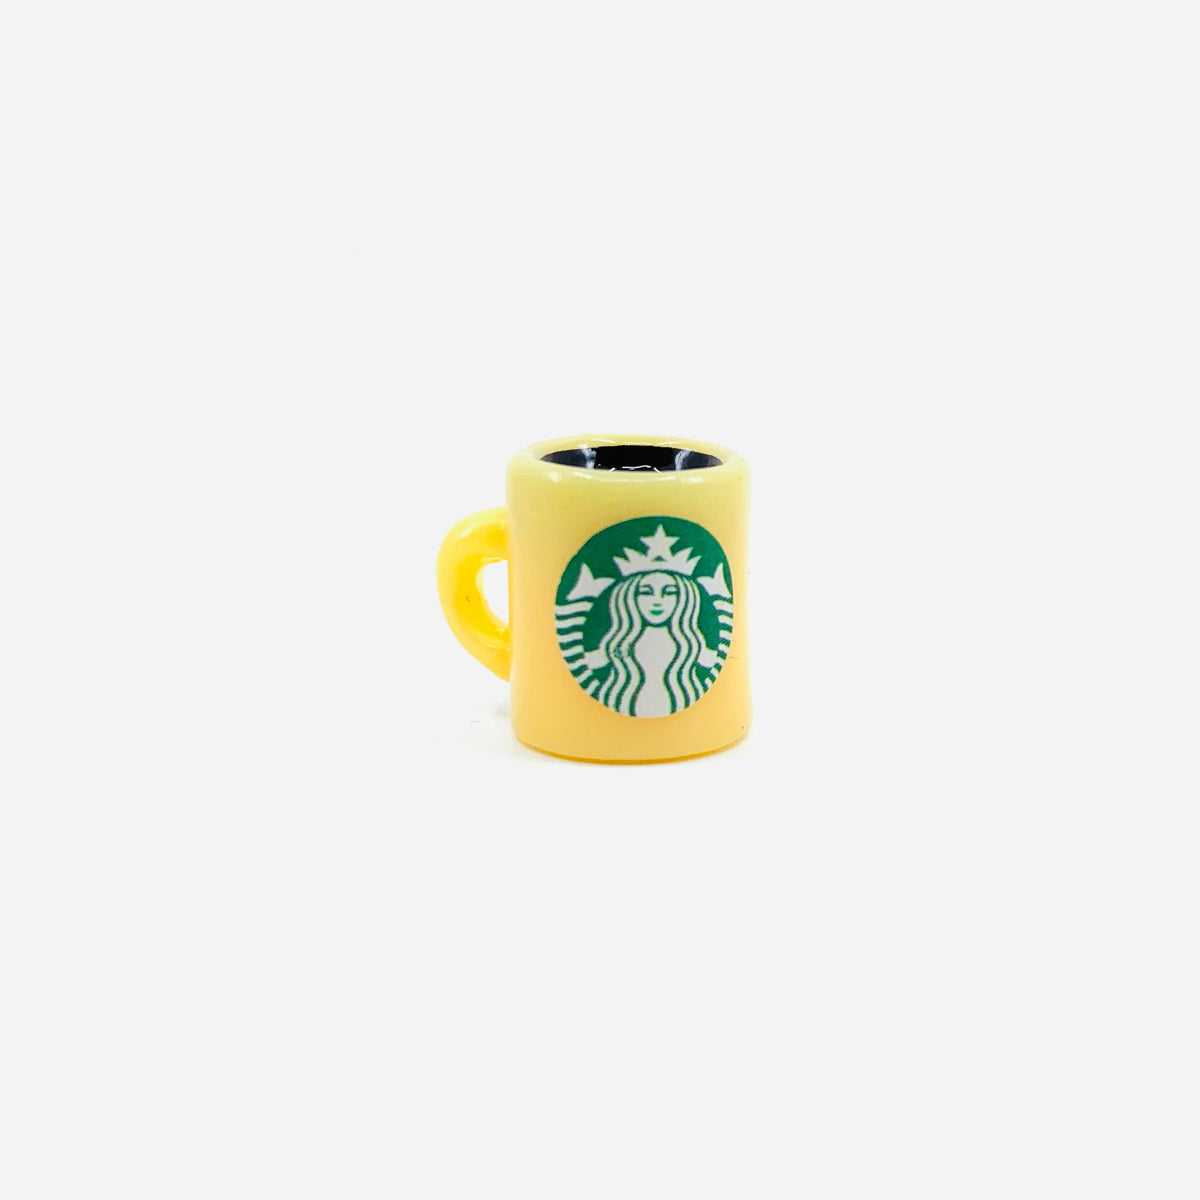 Tiny Coffee Mug Miniature Luke Adams Glass Blowing Studio pale yellow 